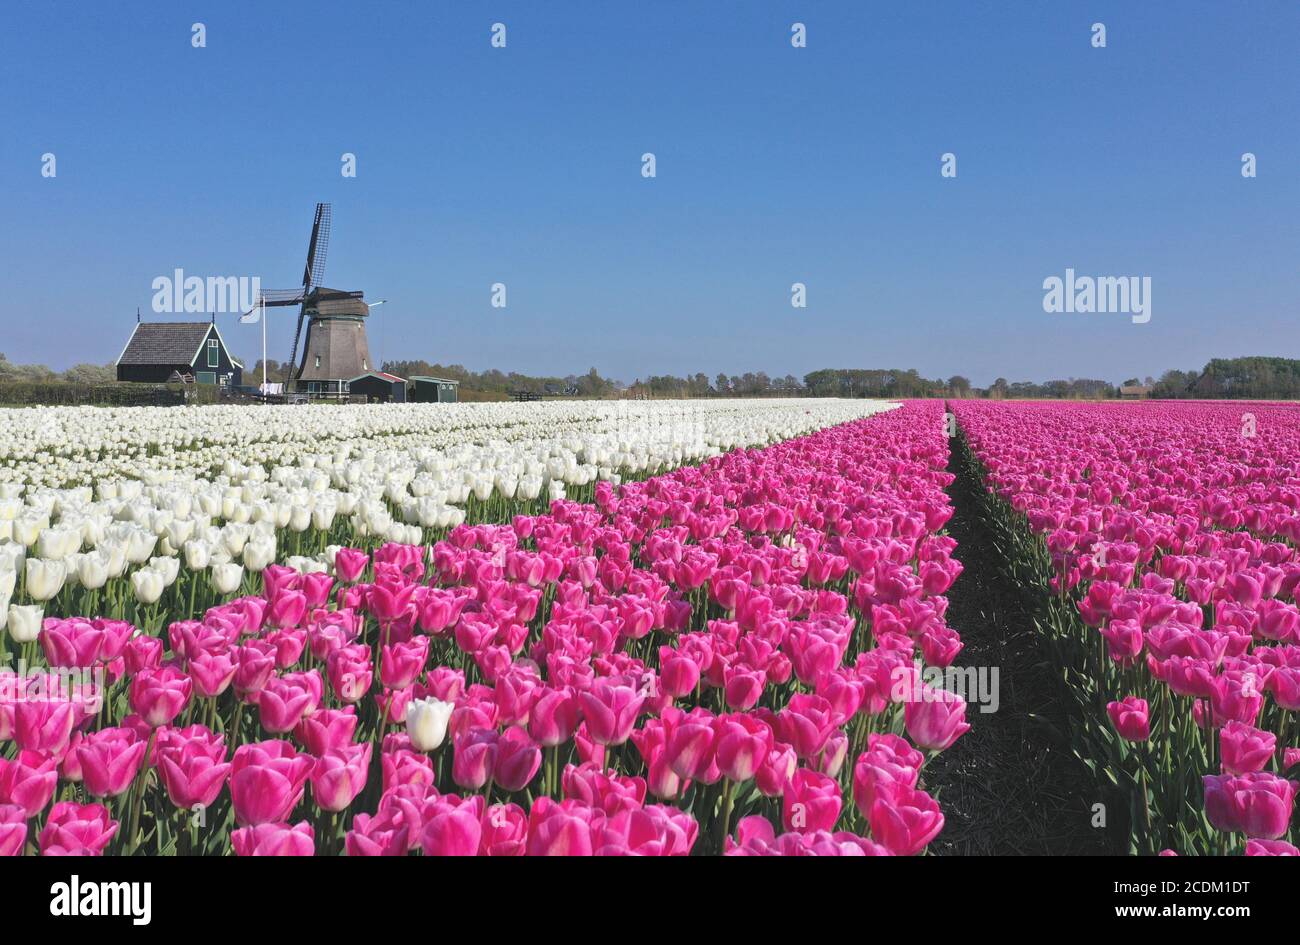 Champs de tulipes fleuris avec moulin à vent, pays-Bas, Nord des pays-Bas, t Zand Banque D'Images